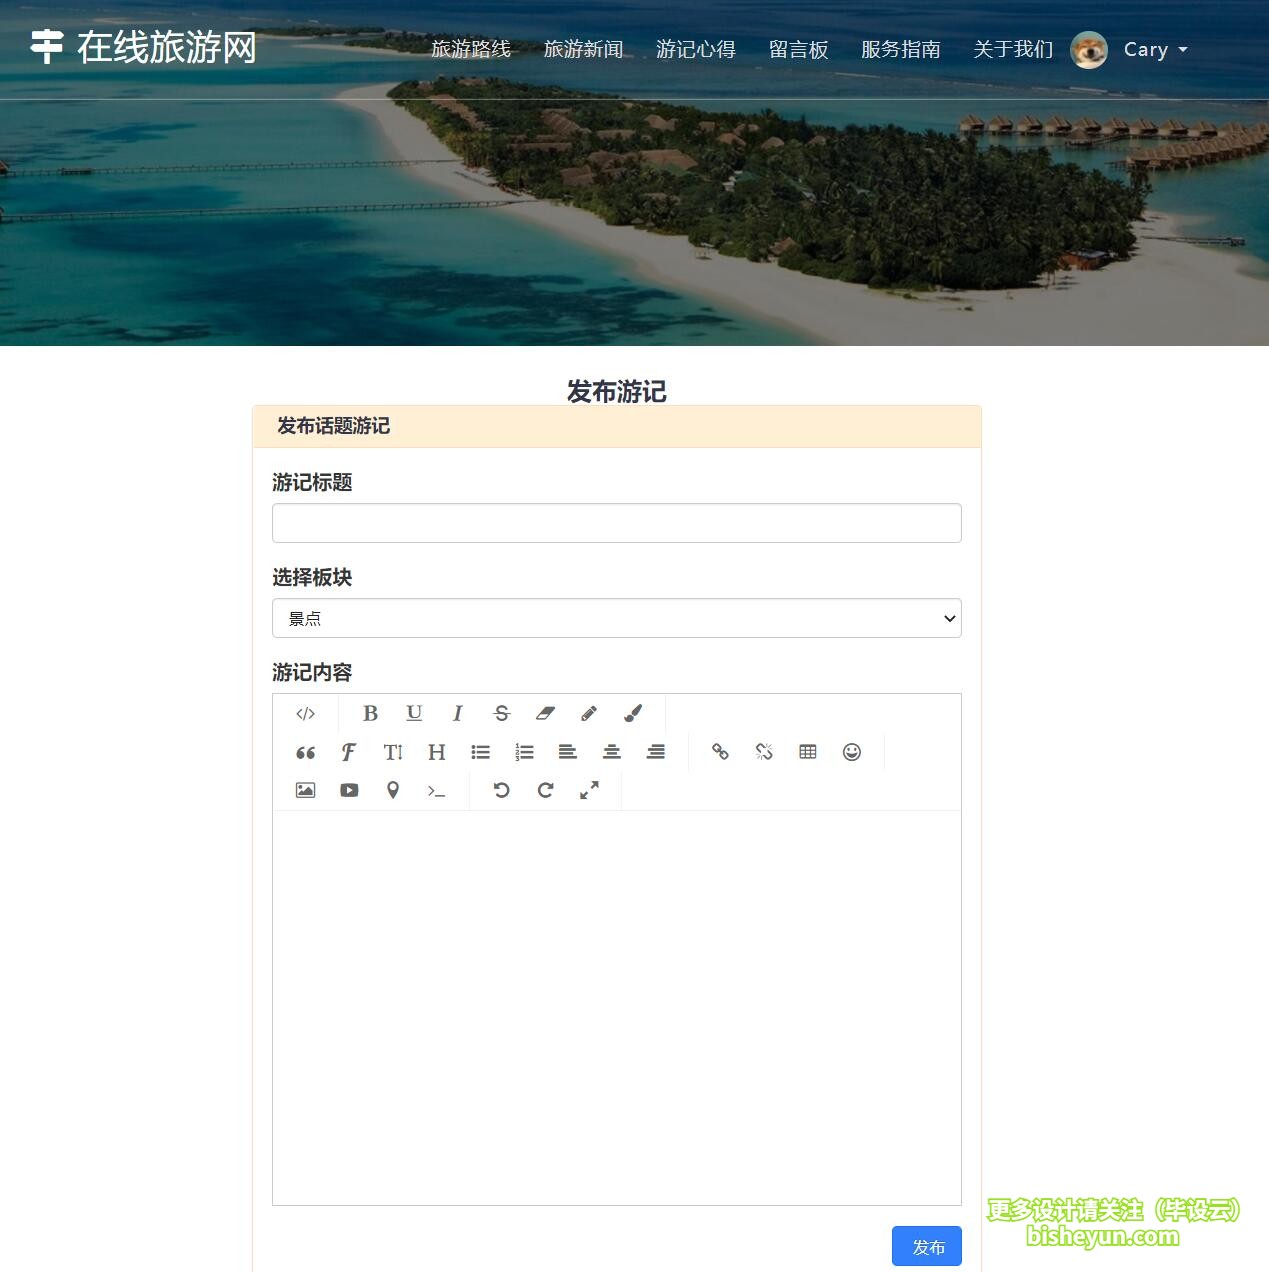 基于php在线旅游网站管理系统-发布游记